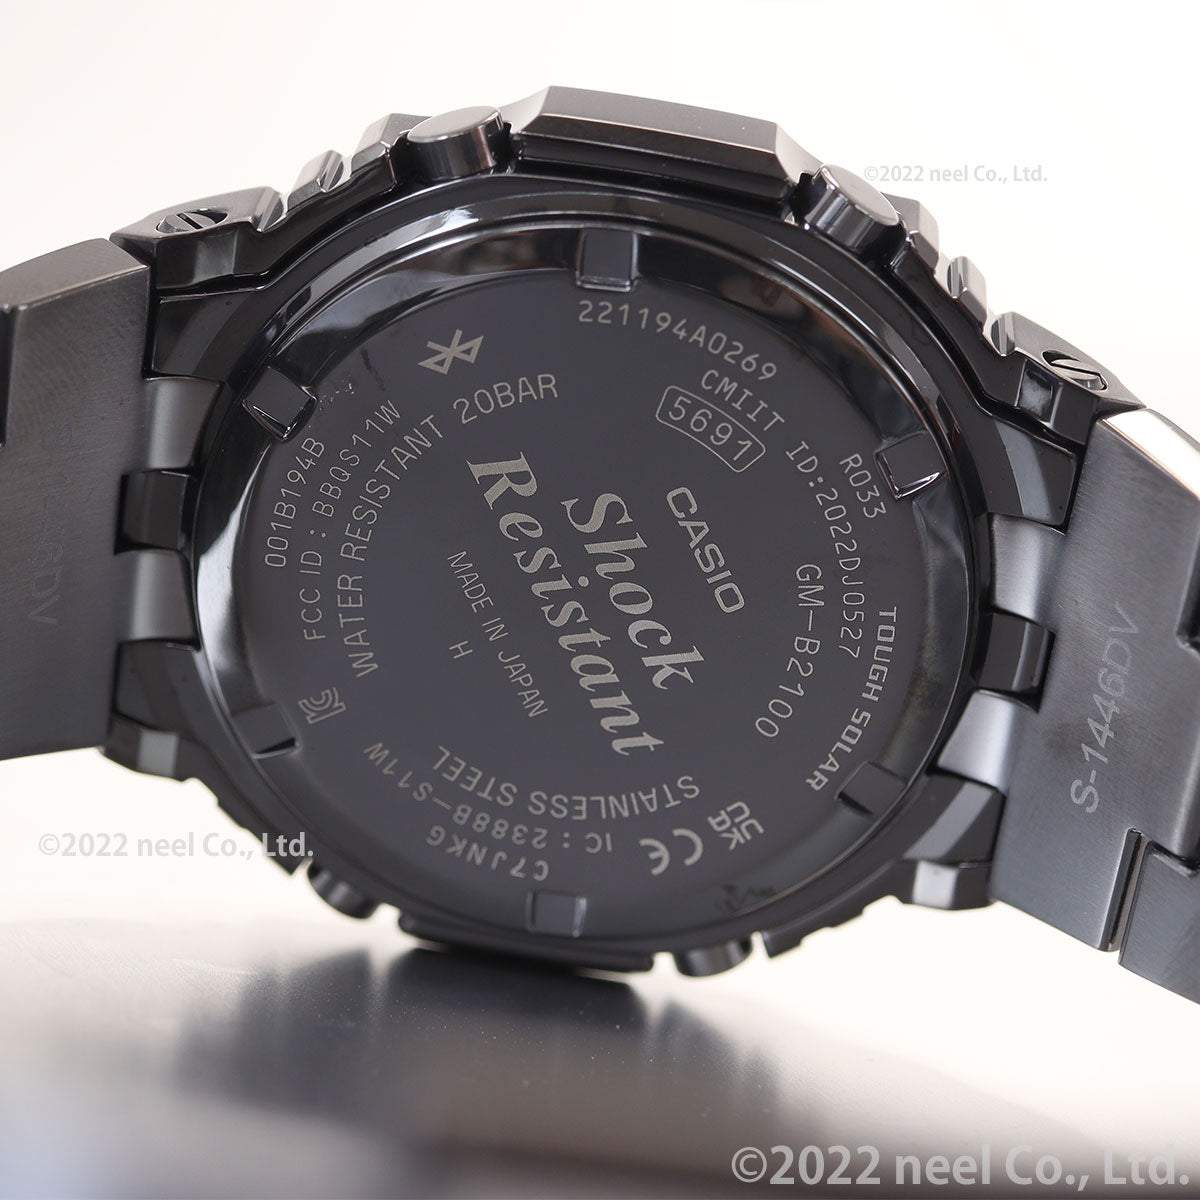 G-SHOCK カシオ Gショック CASIO GM-B2100BD-1AJF タフソーラー フルメタル ブラック 腕時計 メンズ スマートフォンリンク